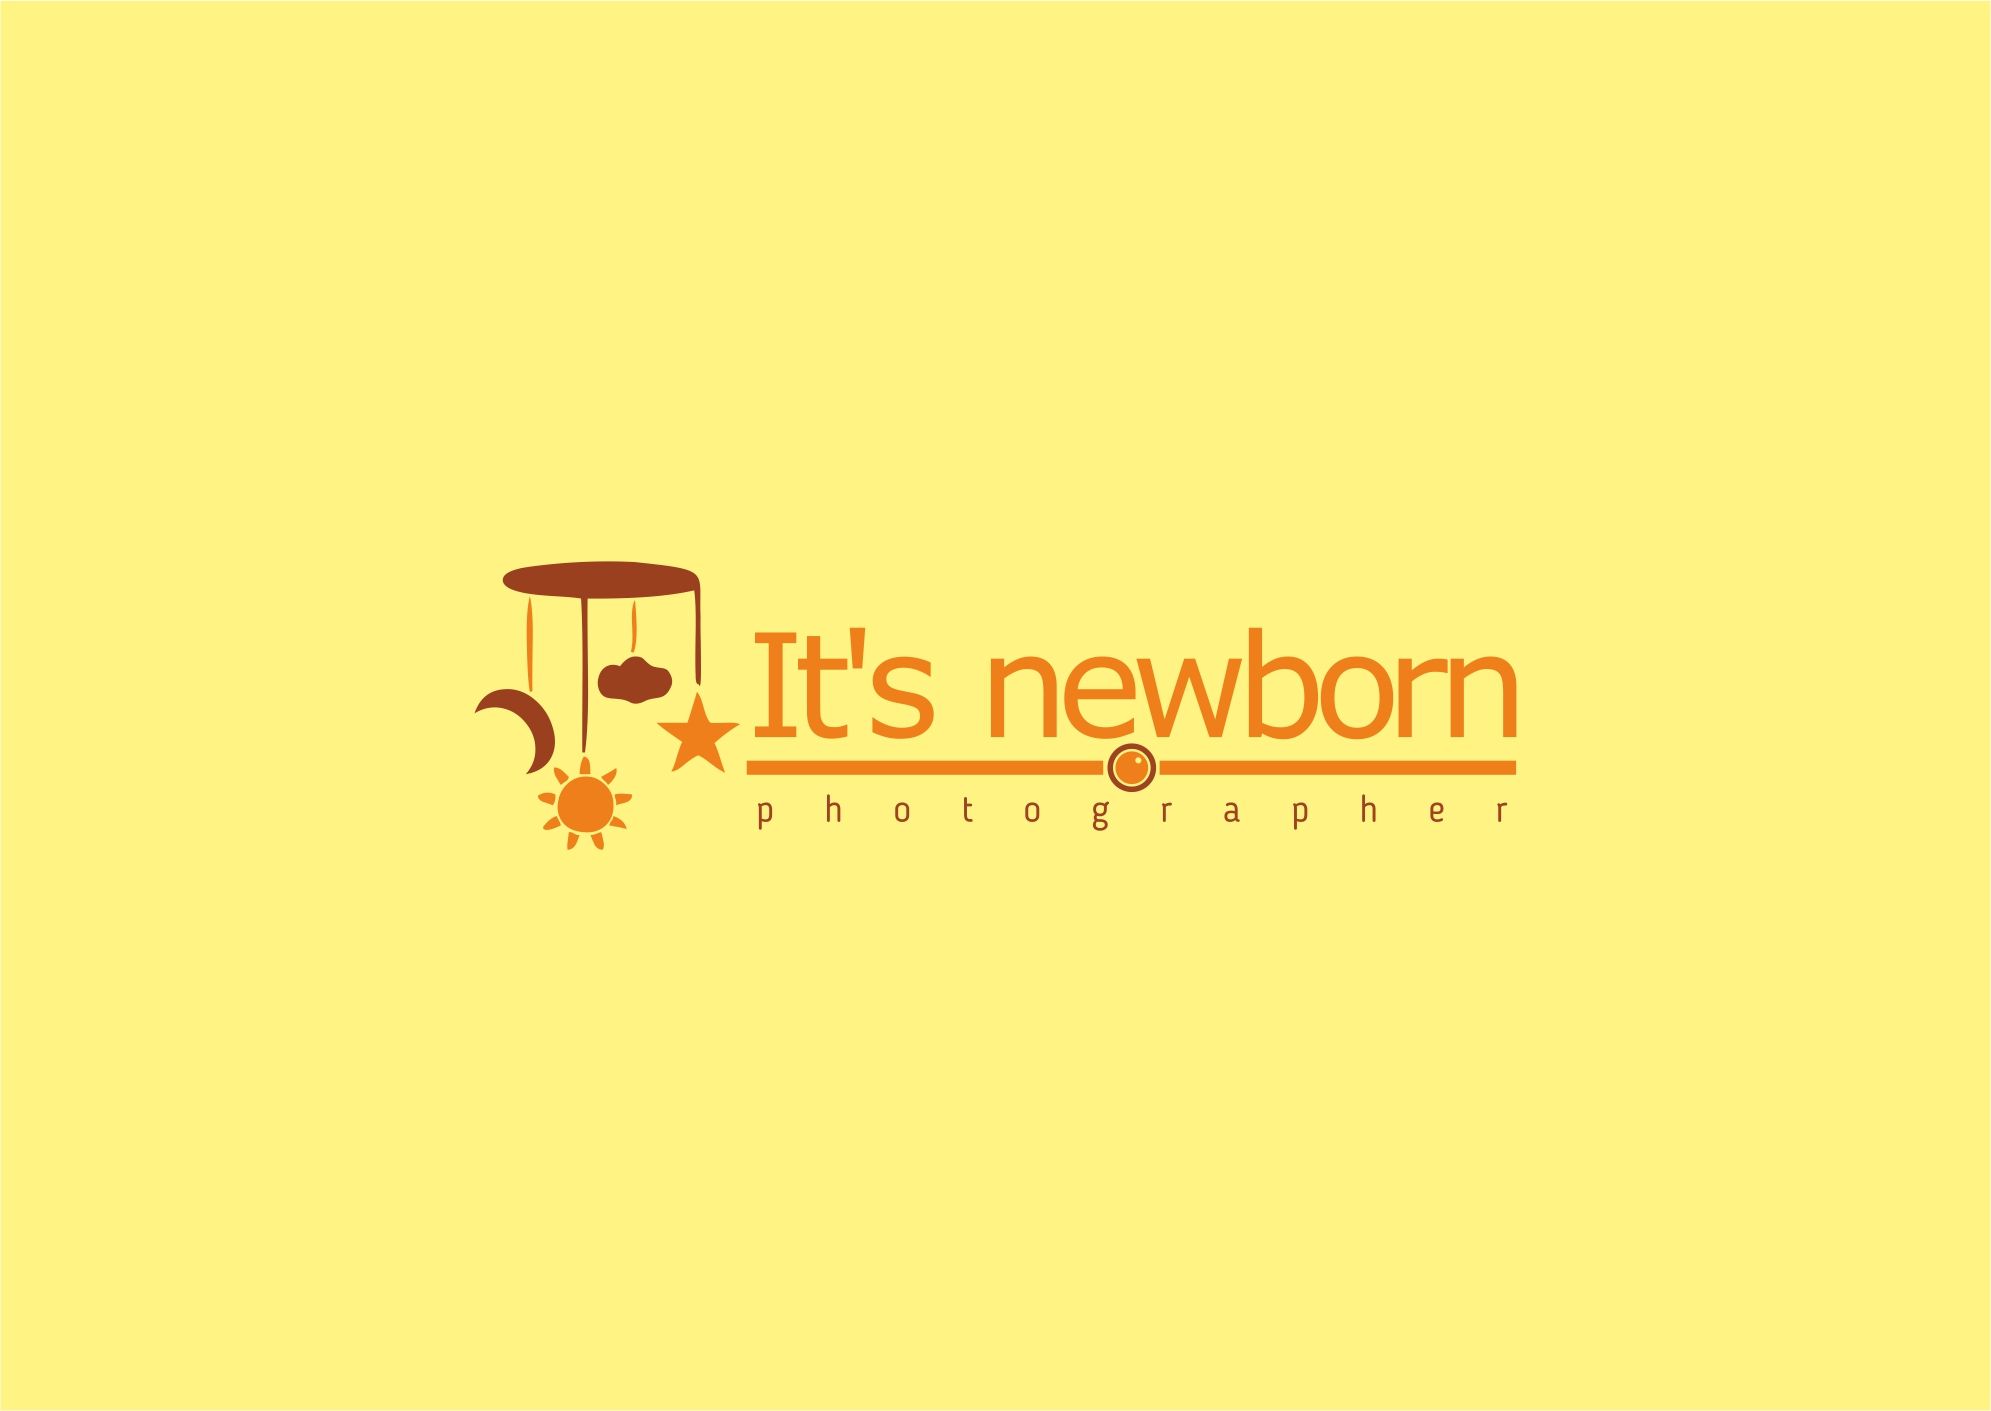 Логотип и фс для фотографа новорожденных - дизайнер hsochi